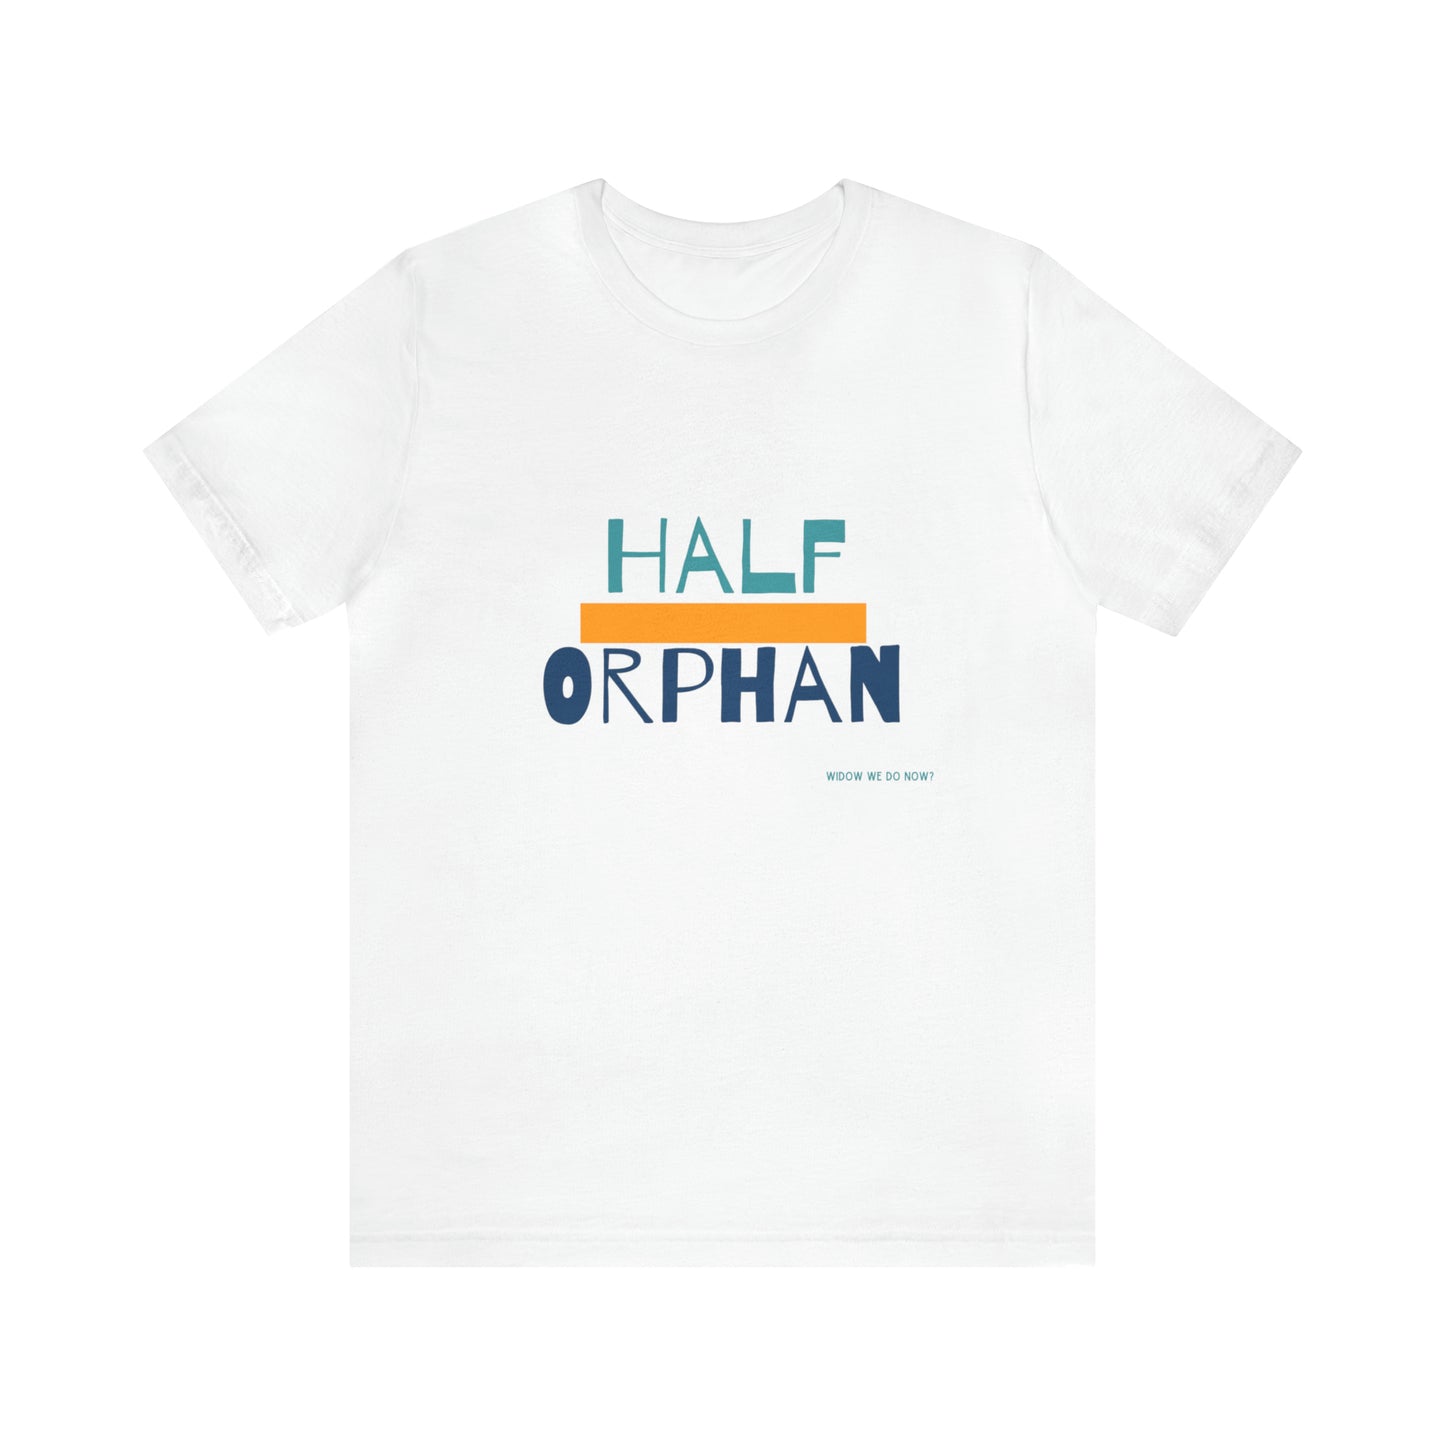 Half Orphan